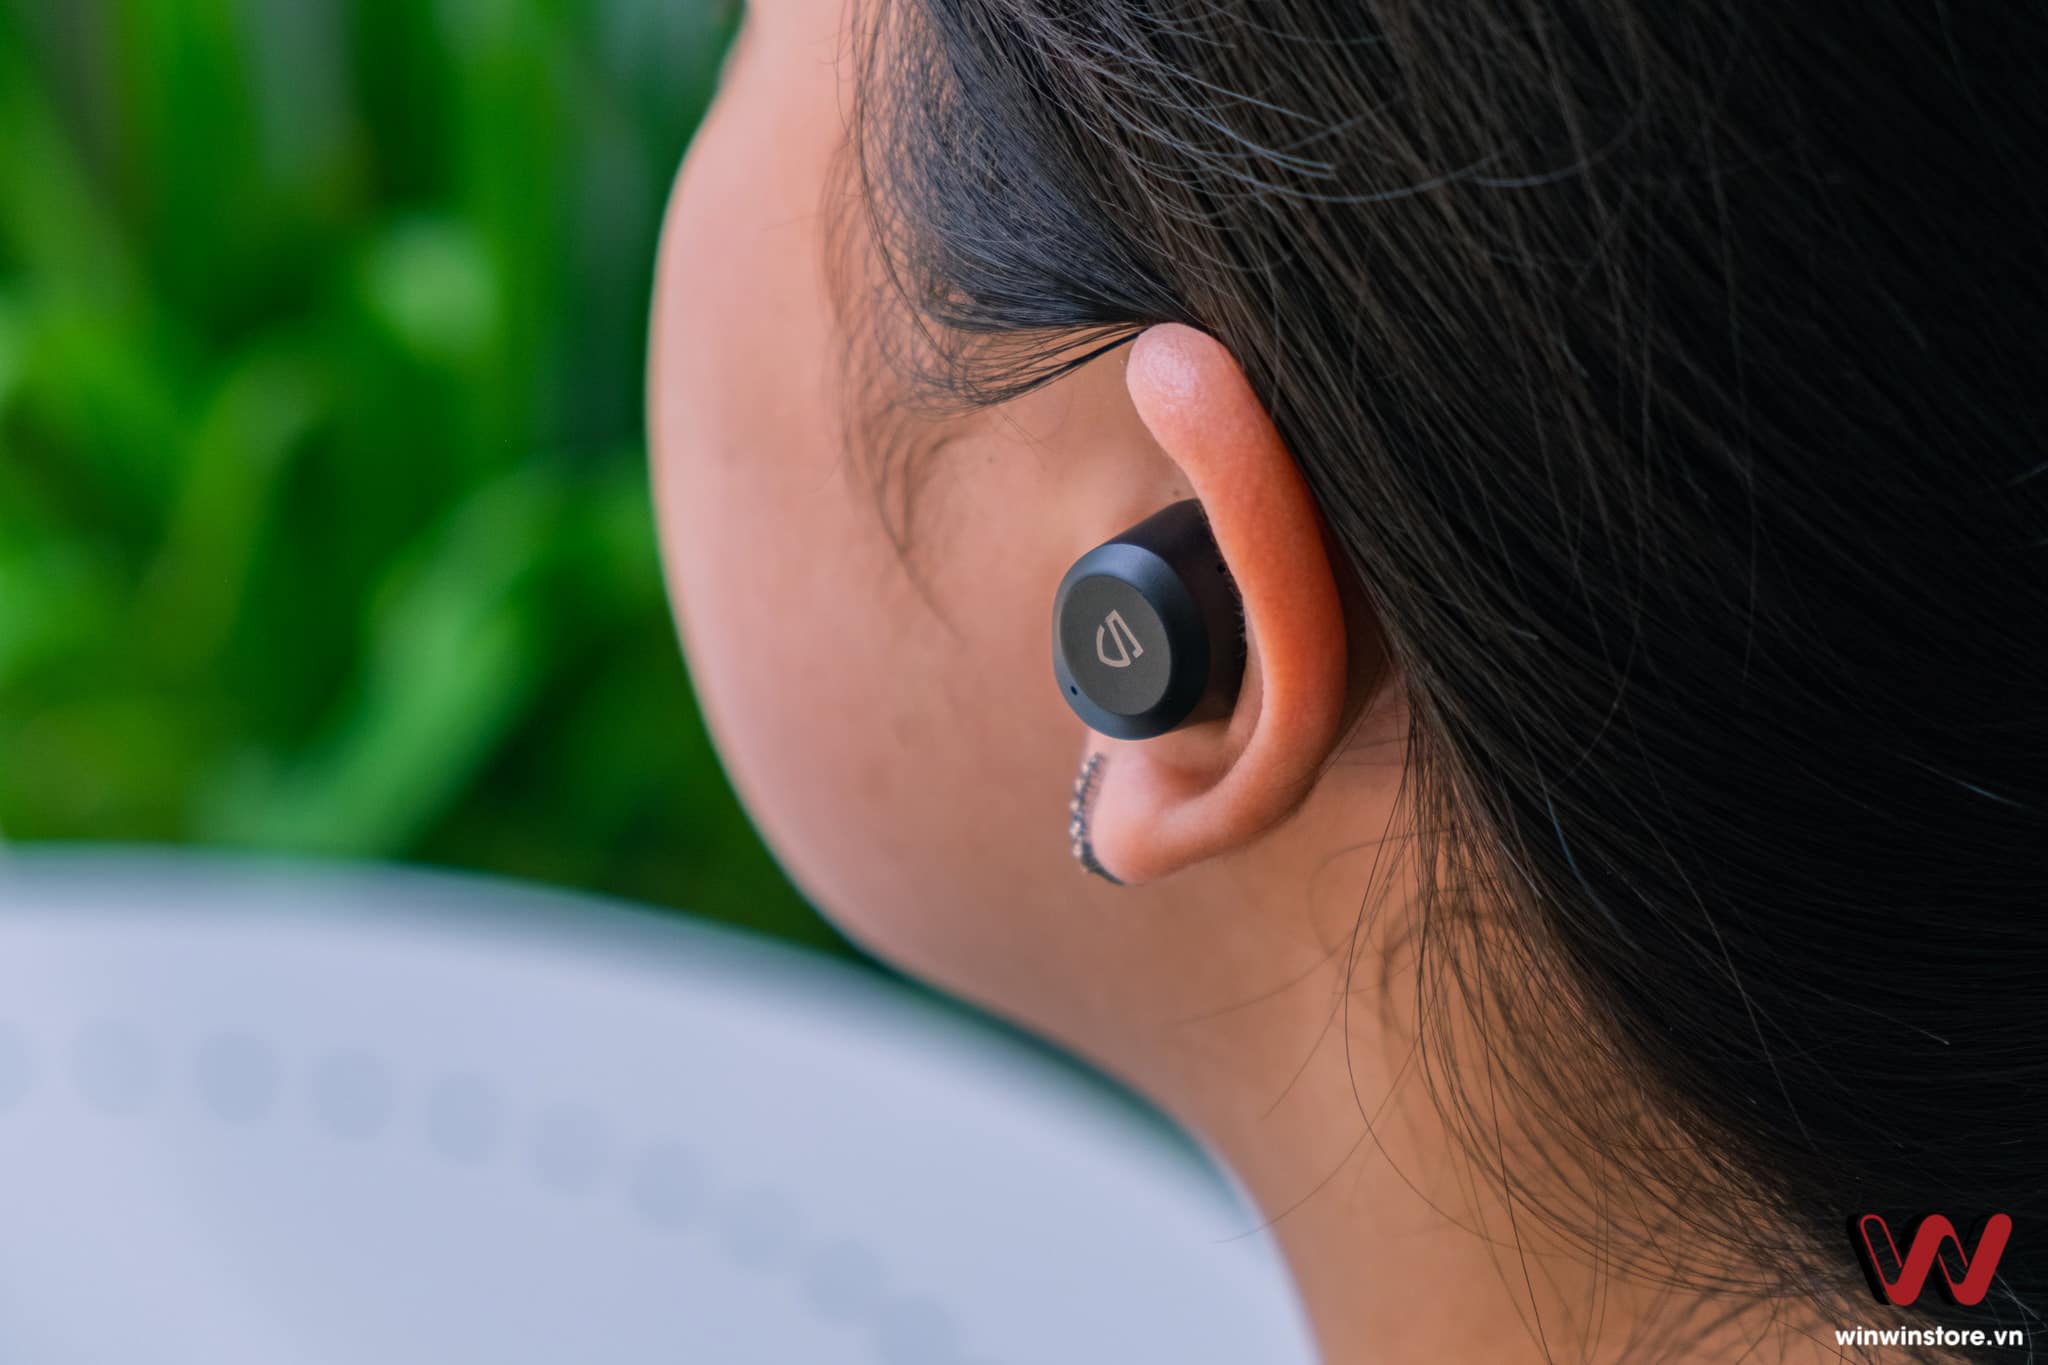 Đánh giá tai nghe không dây Soundpeats T2: Tai nghe chống ồn ANC rẻ nhất hiện tại, chất âm ổn và chống ồn hiệu quả